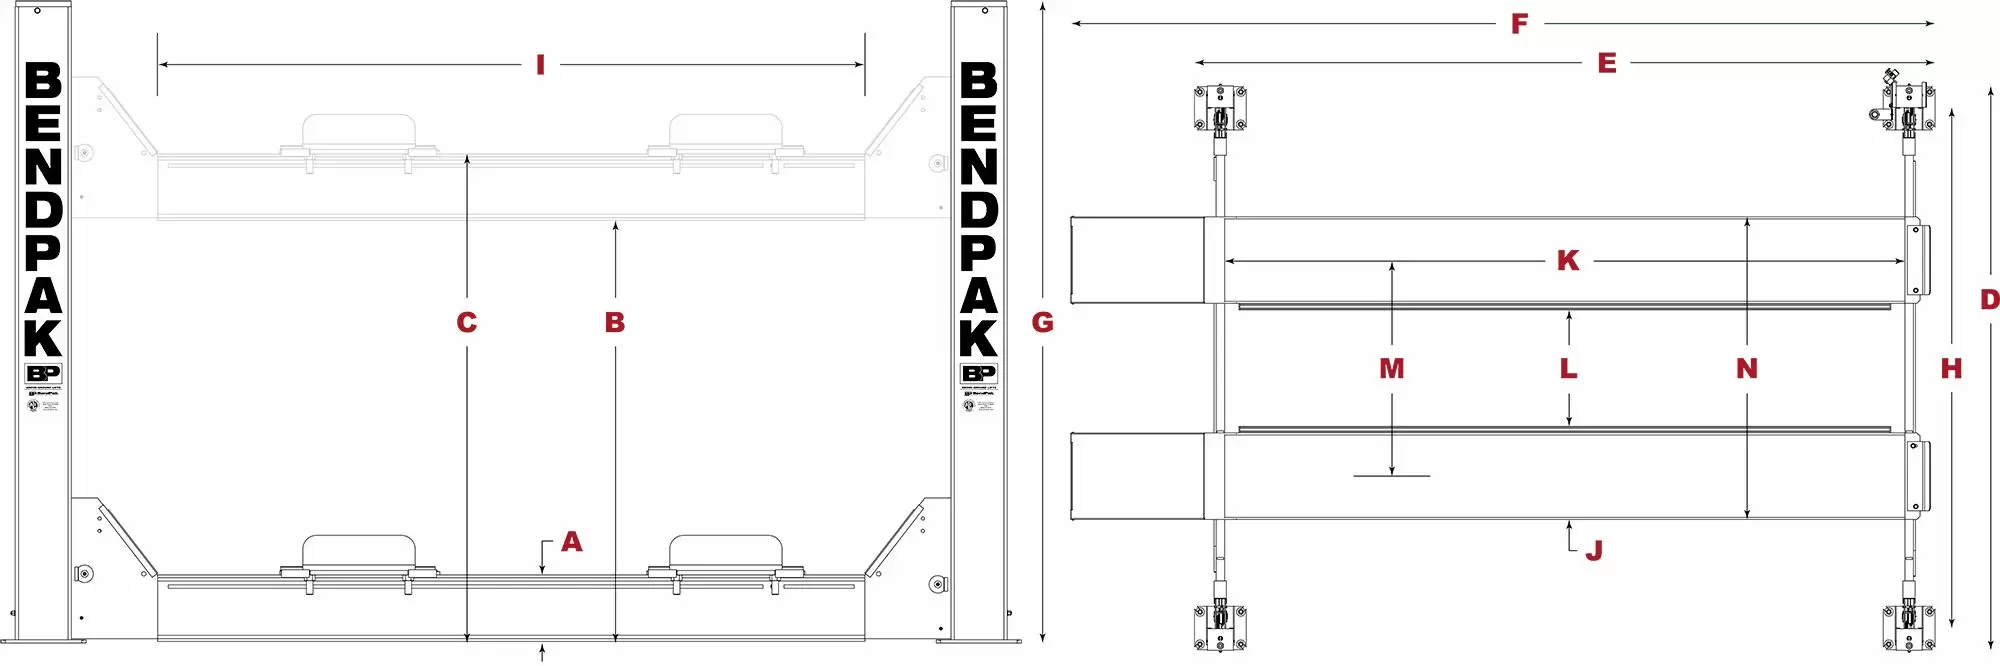 BendPak-Heavy-Duty-Four-Post-Lift-Specifications-Diagram_jpg.webp